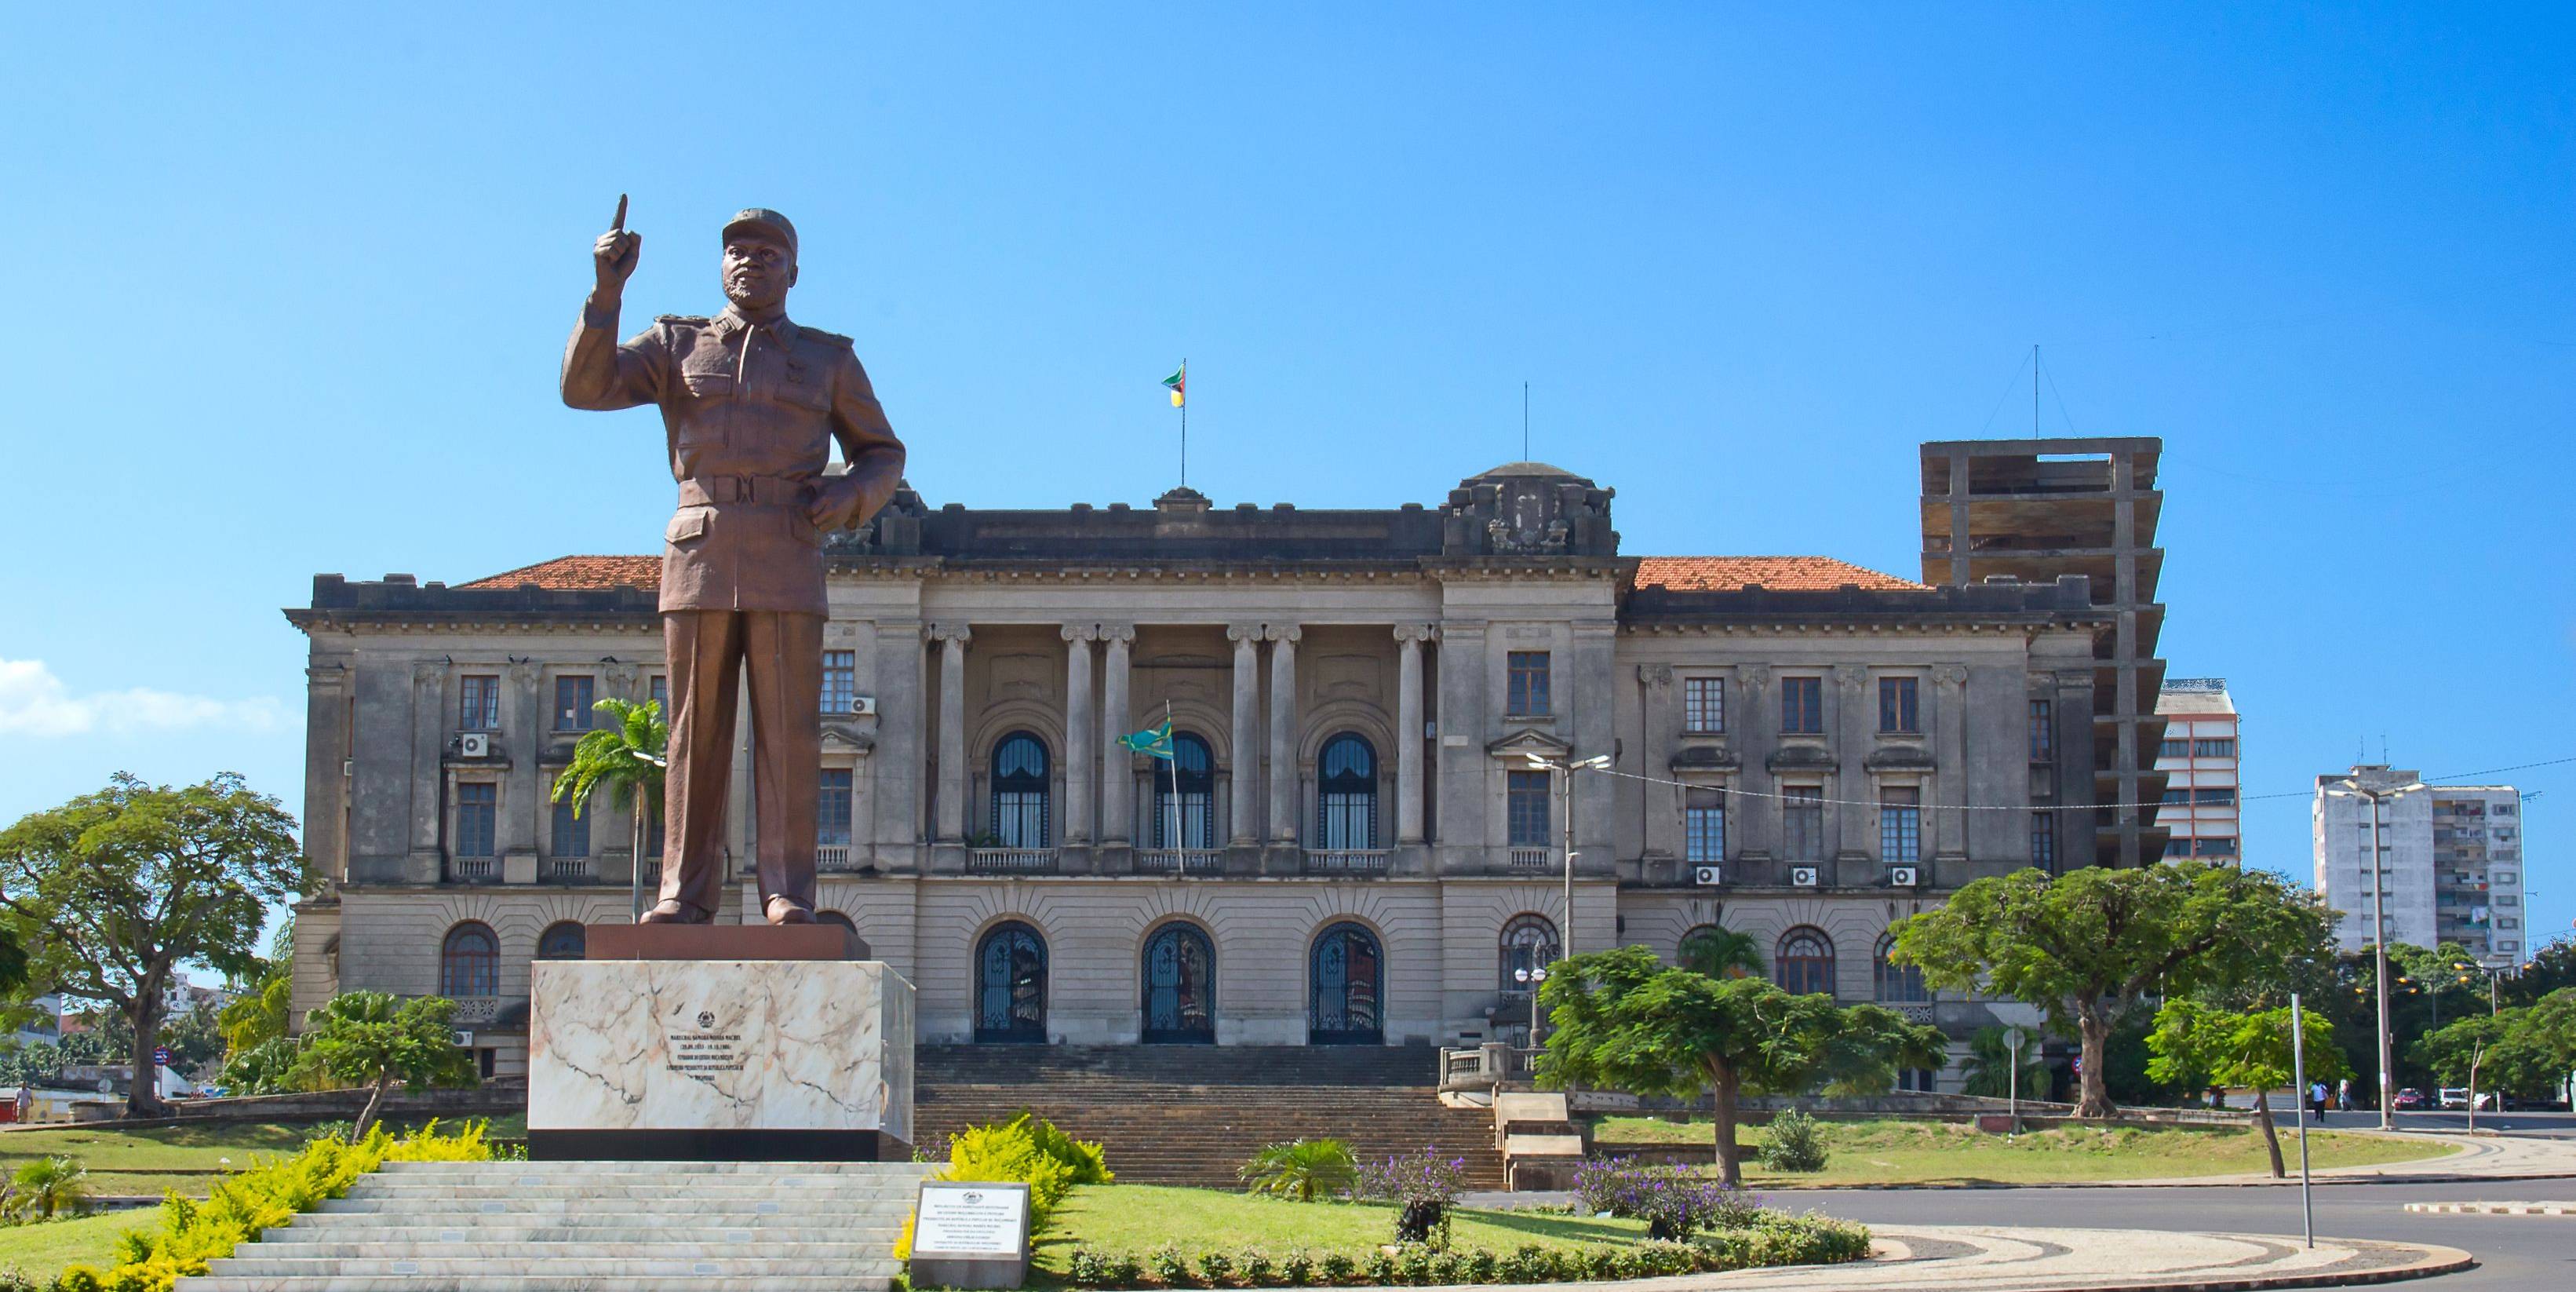 Herzlich willkommen in der Hauptstadt Maputo!